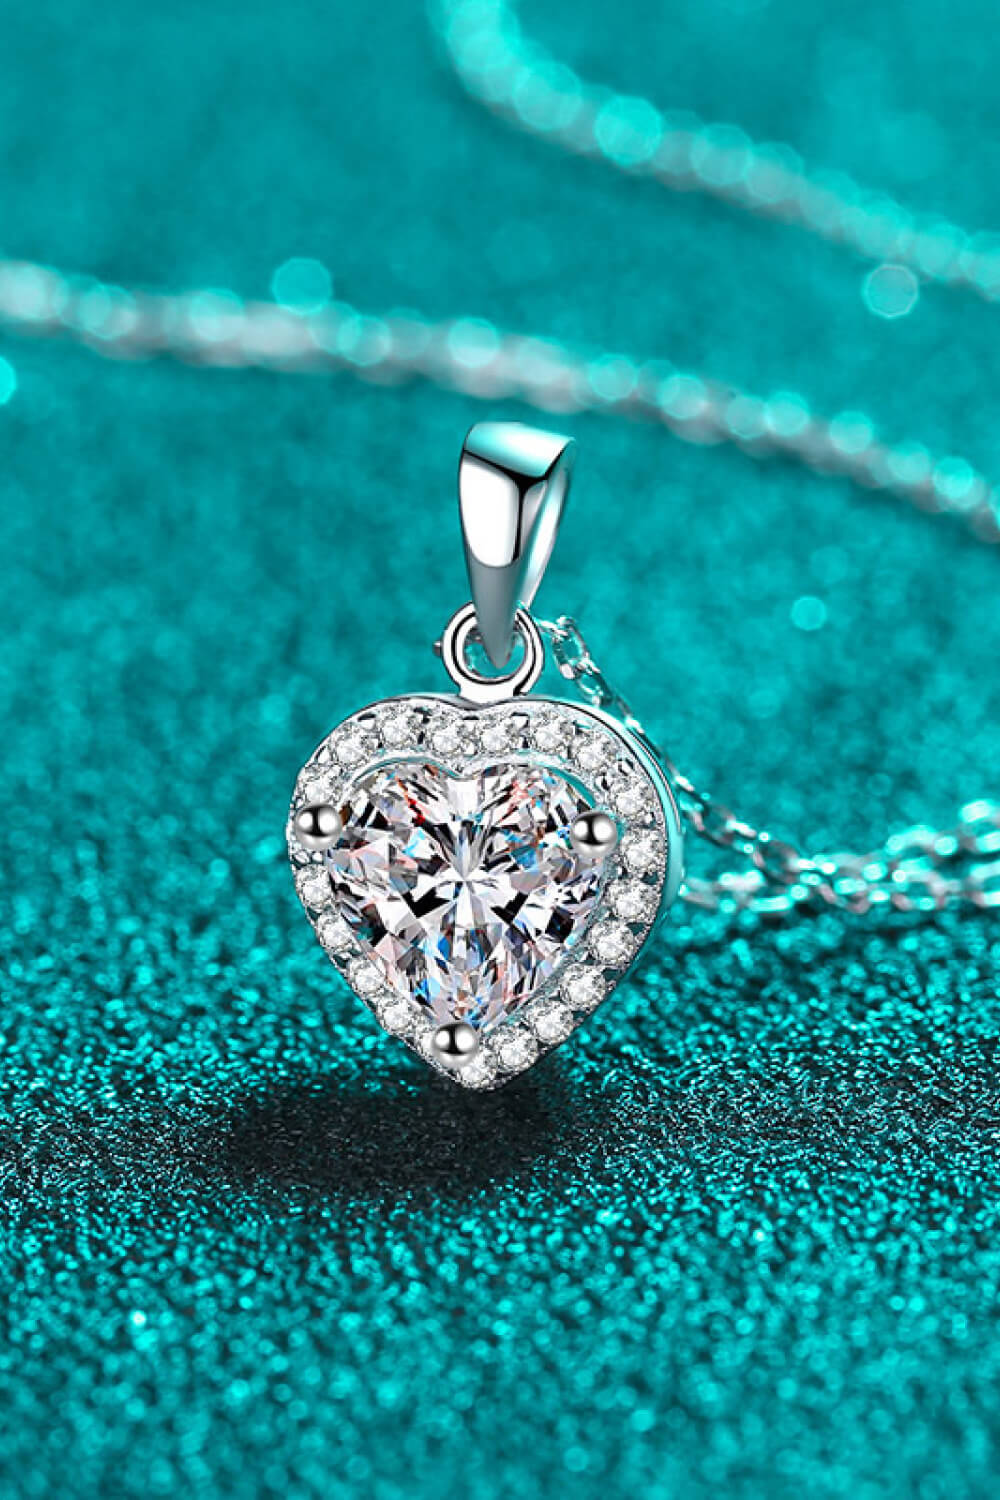 1 Carat Moissanite Heart Pendant Chain Necklace-Ever Joy